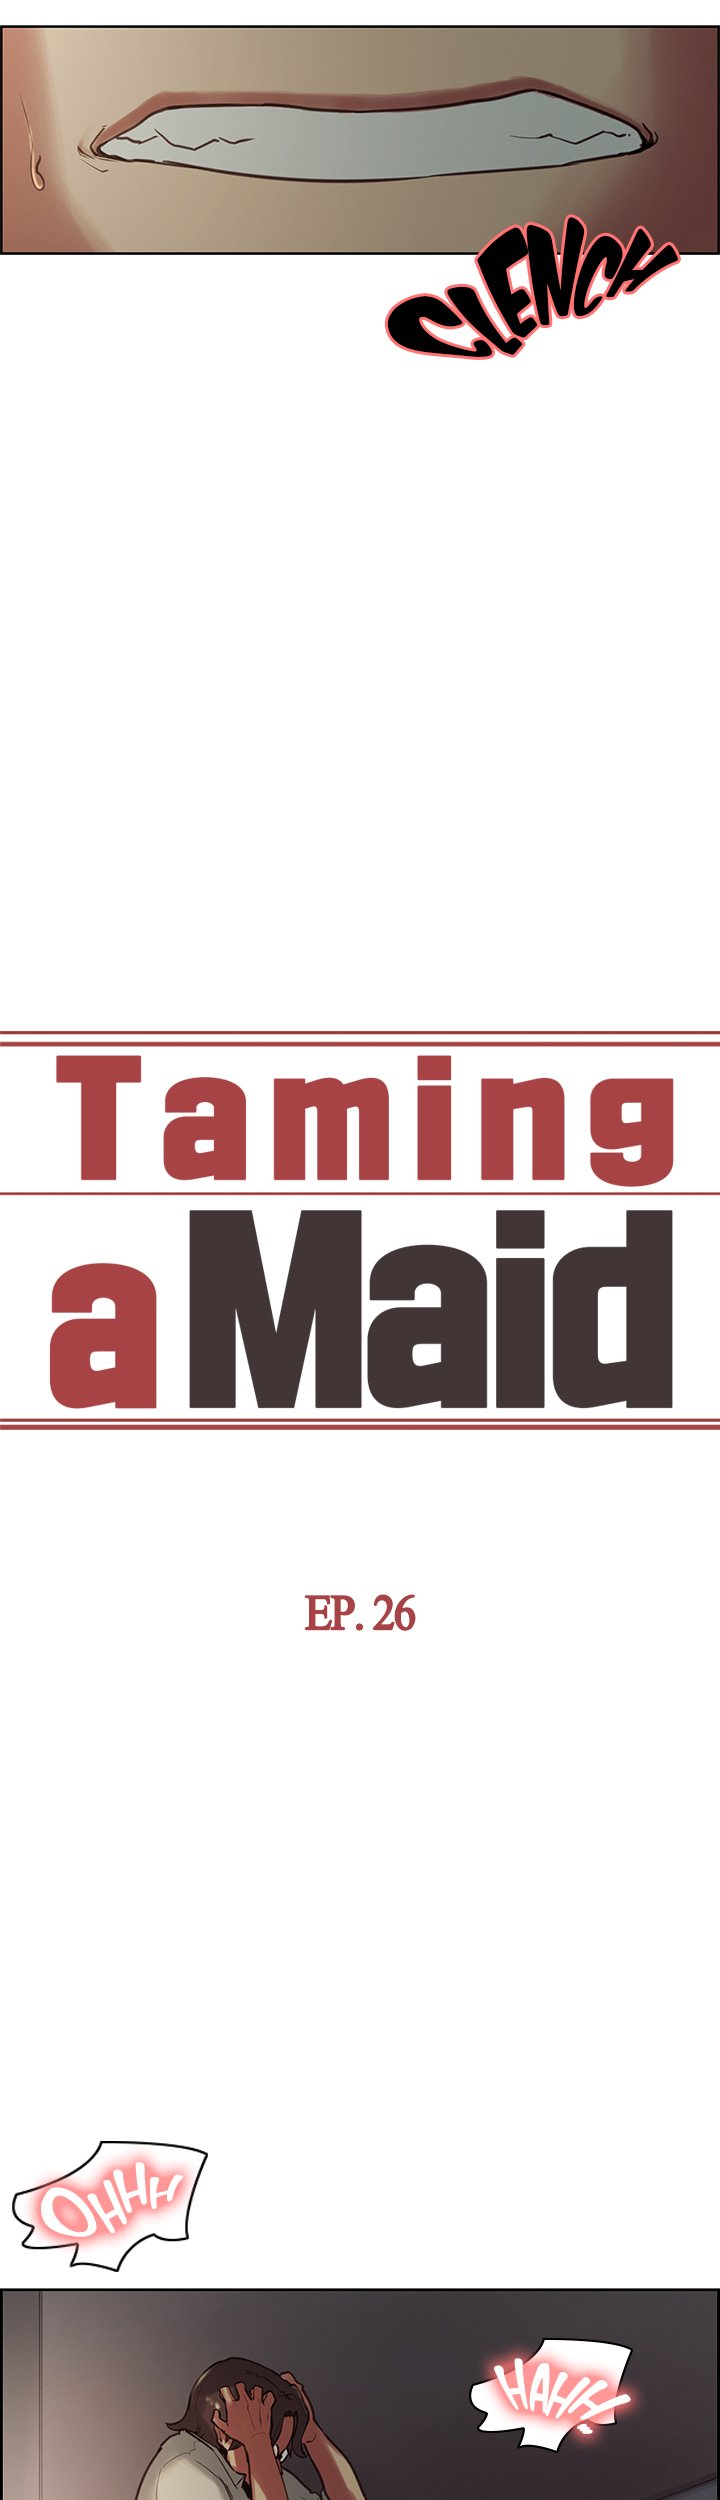 Taming a Maid image